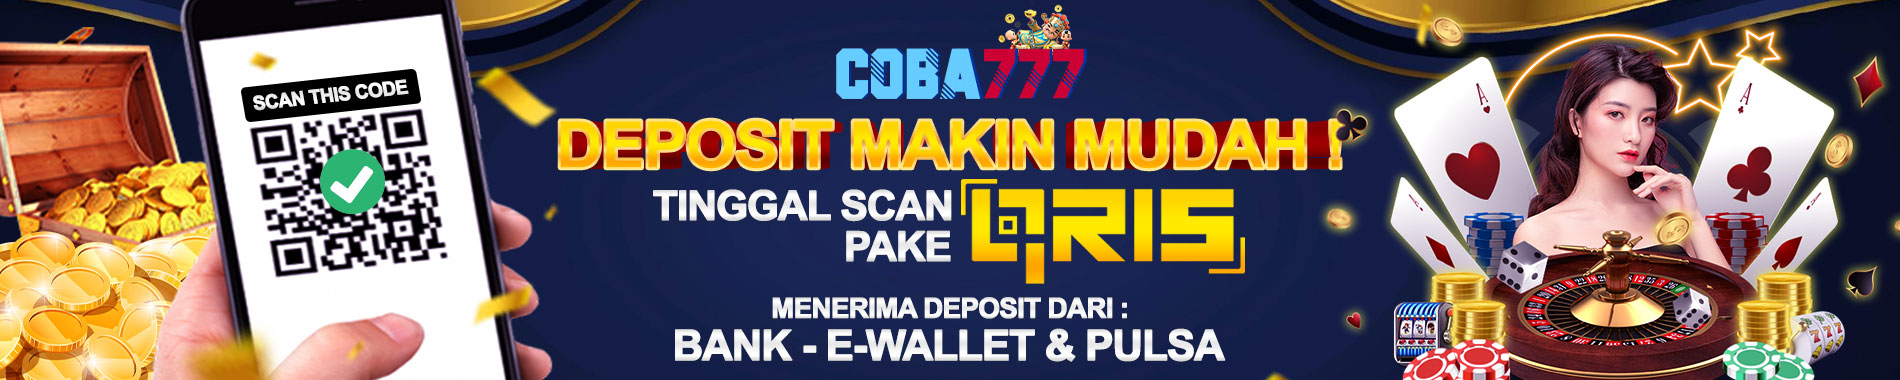 Deposit Coba777